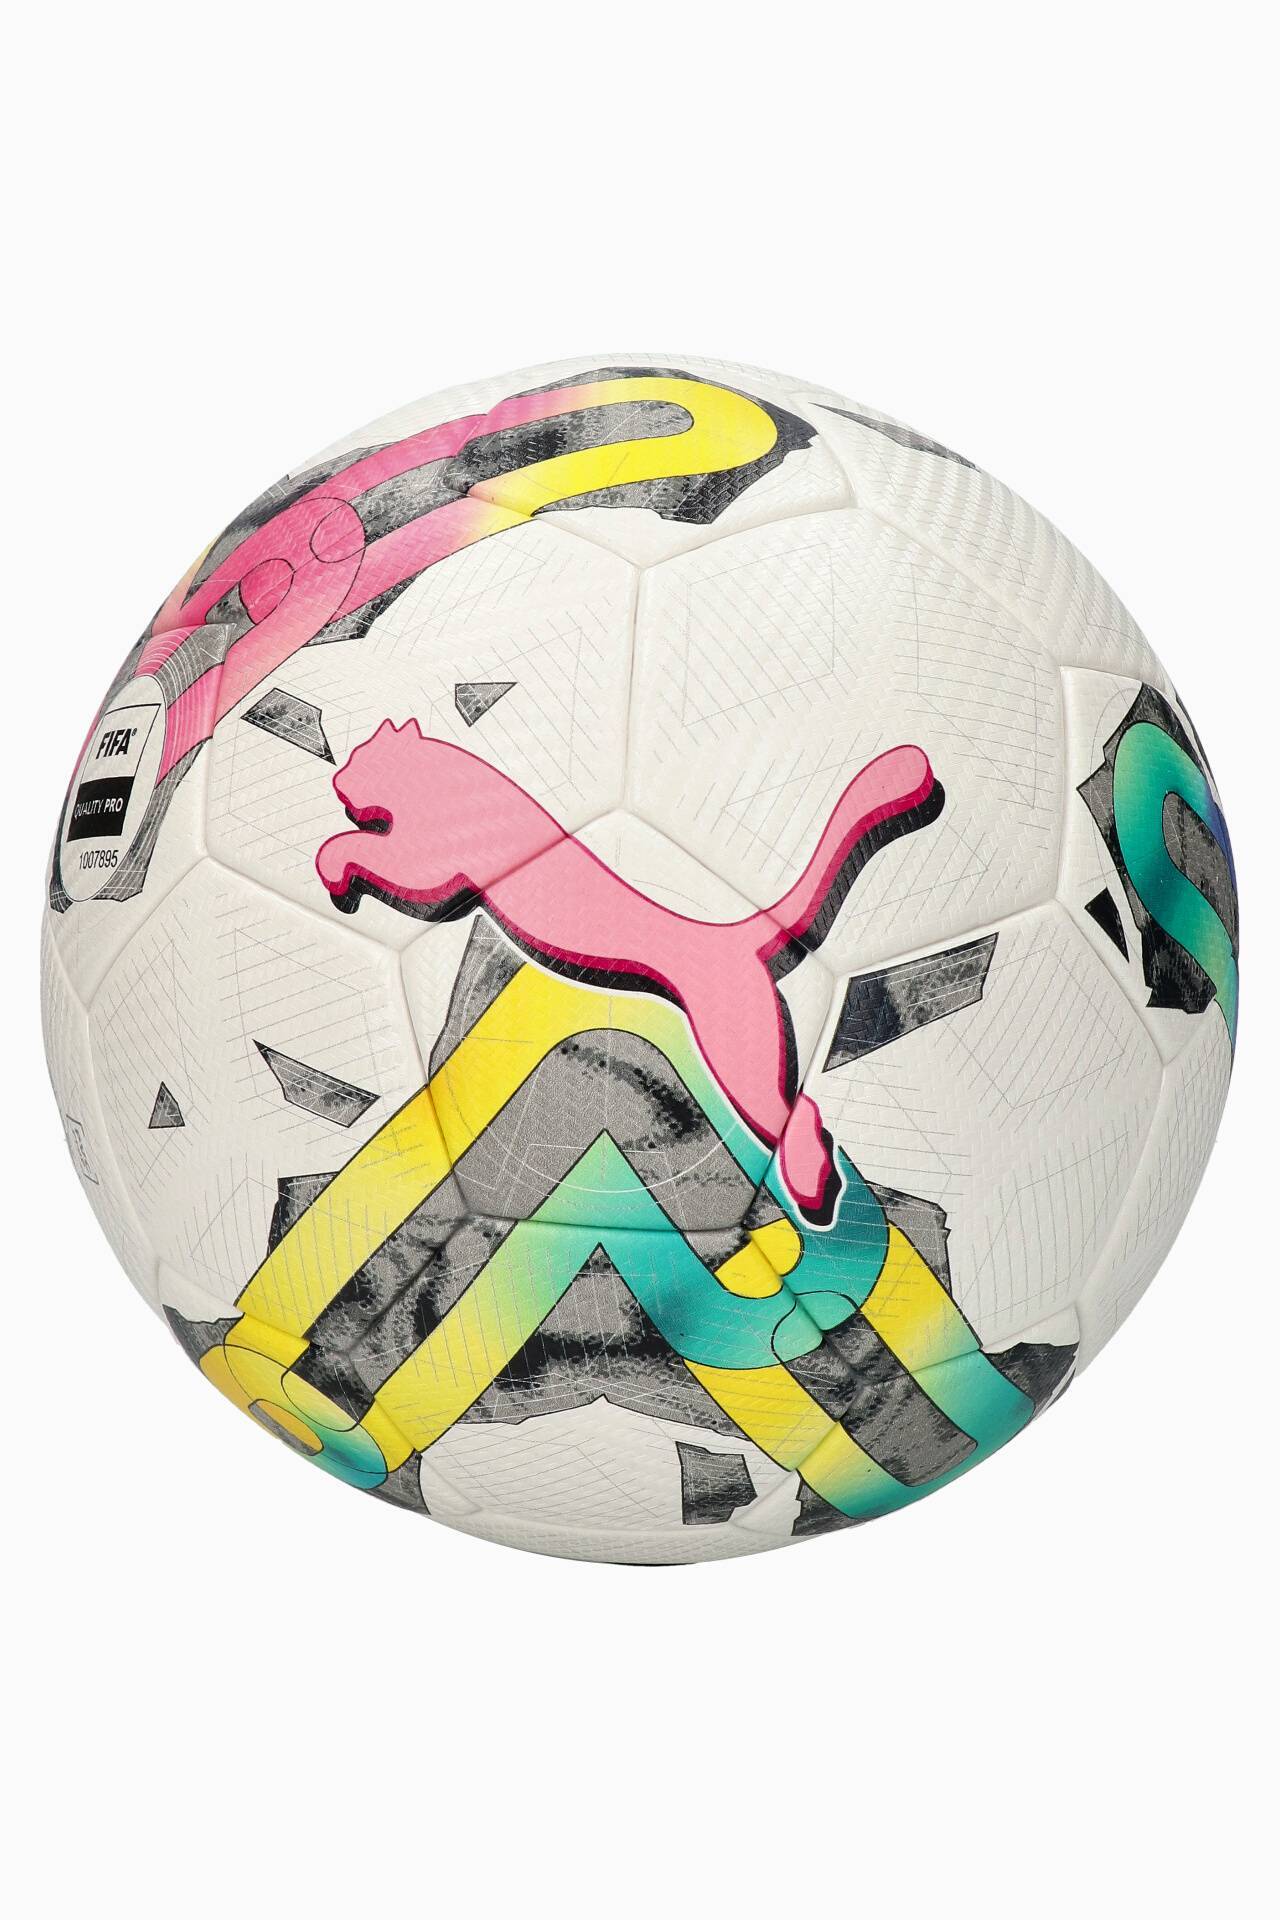 Футбольный мяч fifa quality pro. Jako Spielball Match 2.0 14 p HS FIFA quality Pro отзывы.